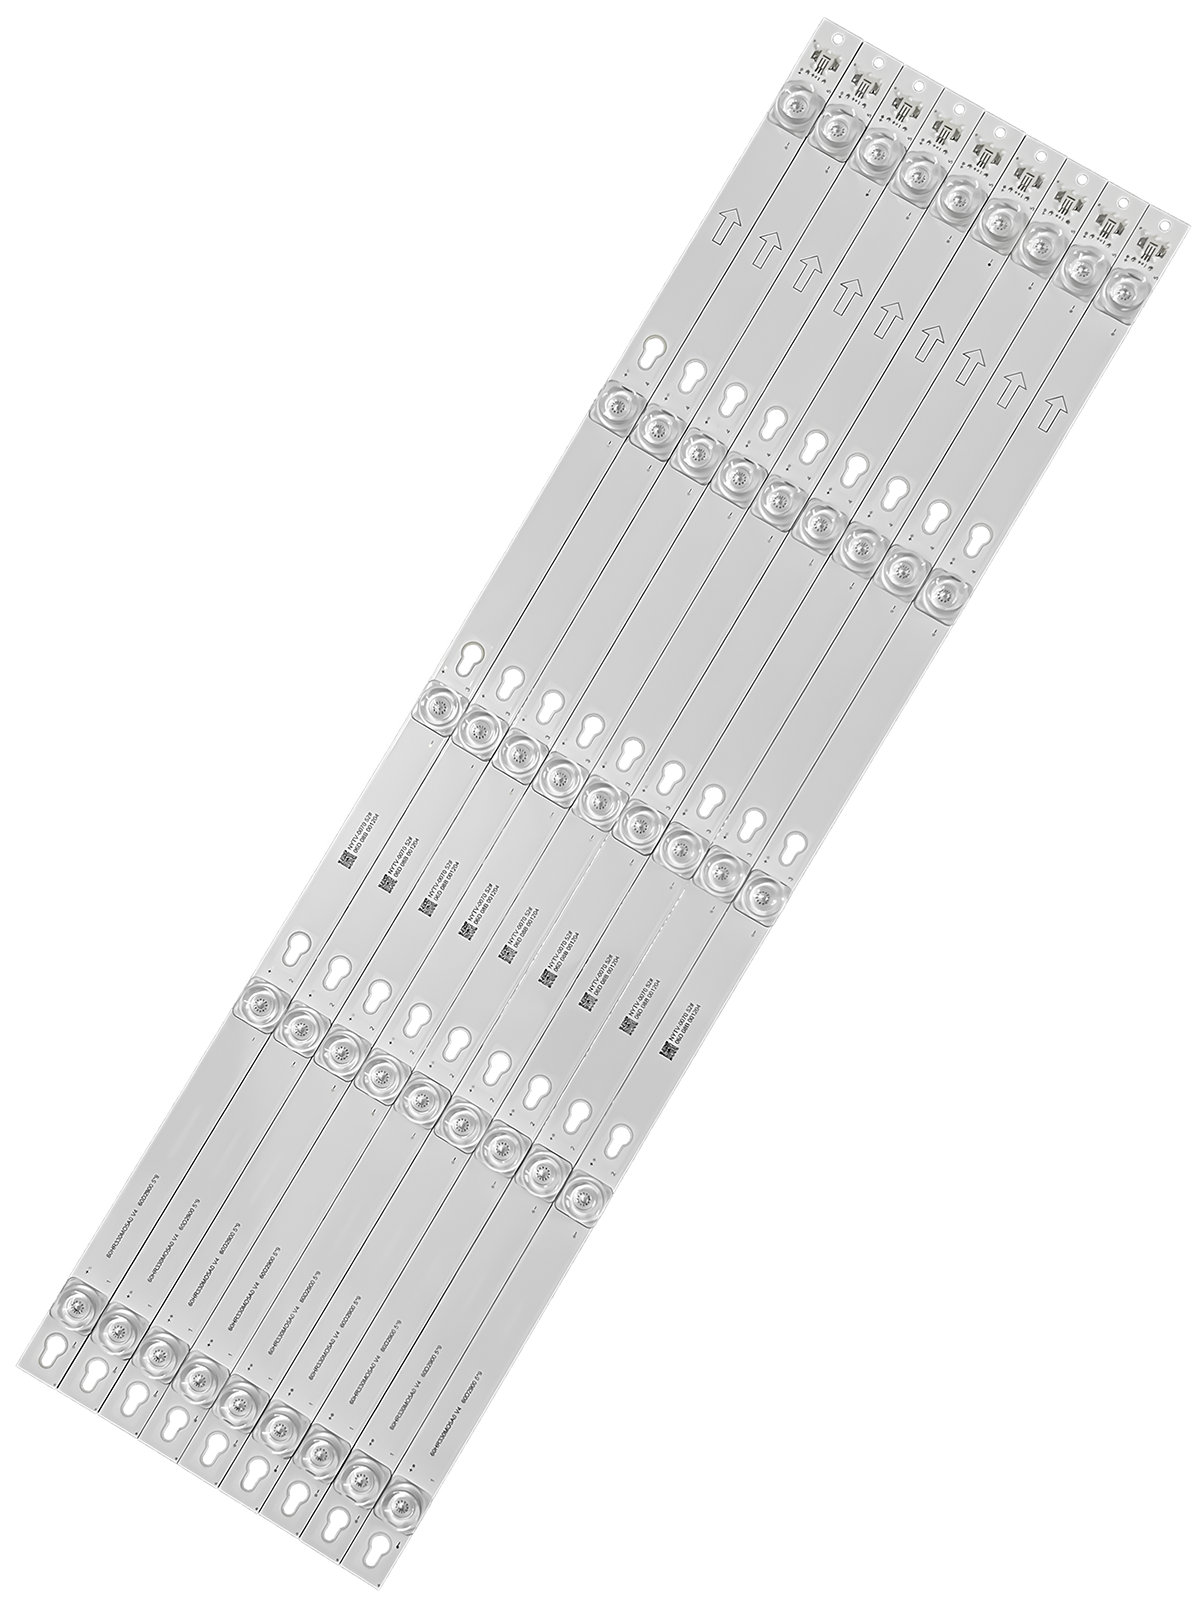 TCL 60P20US LED Strip set 58.6*1.3cm 9leds 6v led